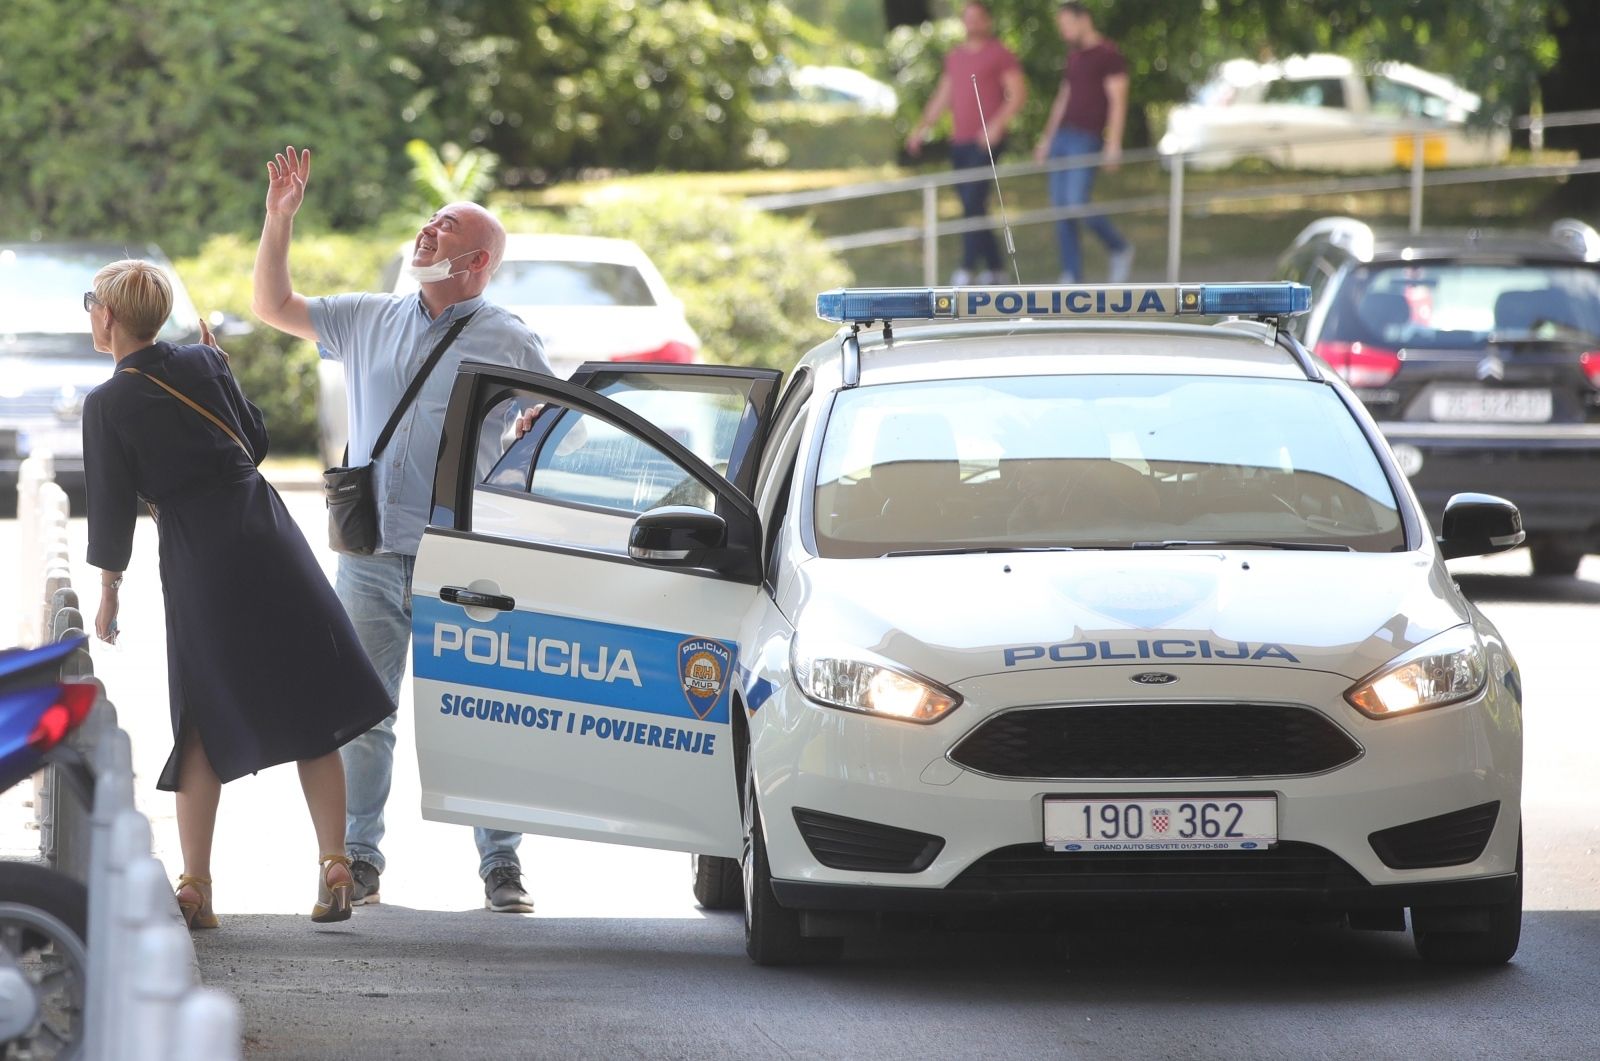 01.07.2021., Zagreb - Ispred Gradskog poglavarstva nalazi se nekoliko policijskih vozila i policijskih sluzbenika. Photo: Sanjin Strukic/PIXSELL